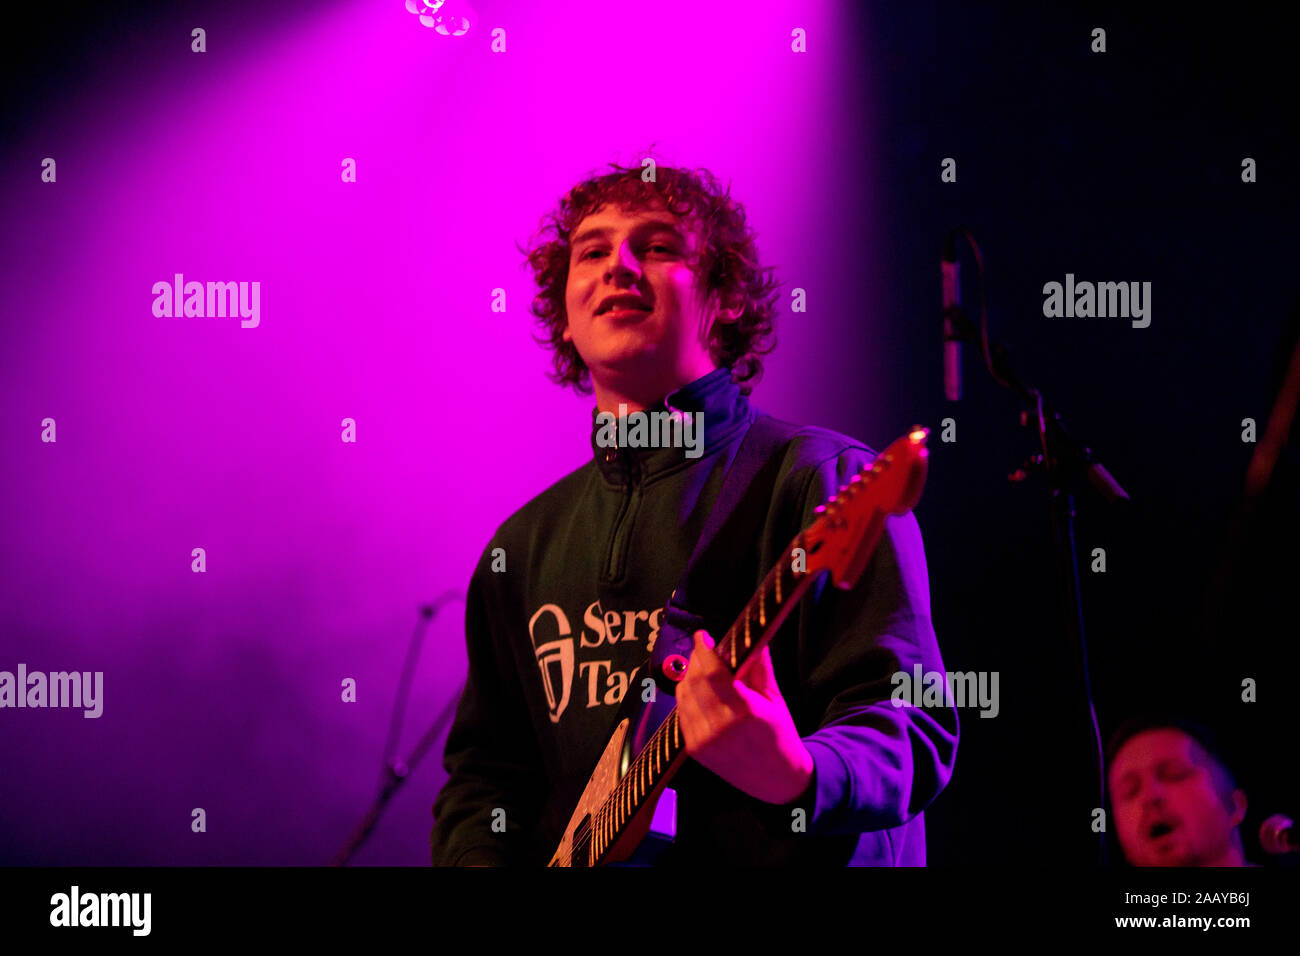 Manchester, UK. 23 novembre, 2019. Le groupe écossais Snuts en concert à la Manchester Academy 1 appuyer Lewis Capaldi dans un spectacle. Banque D'Images